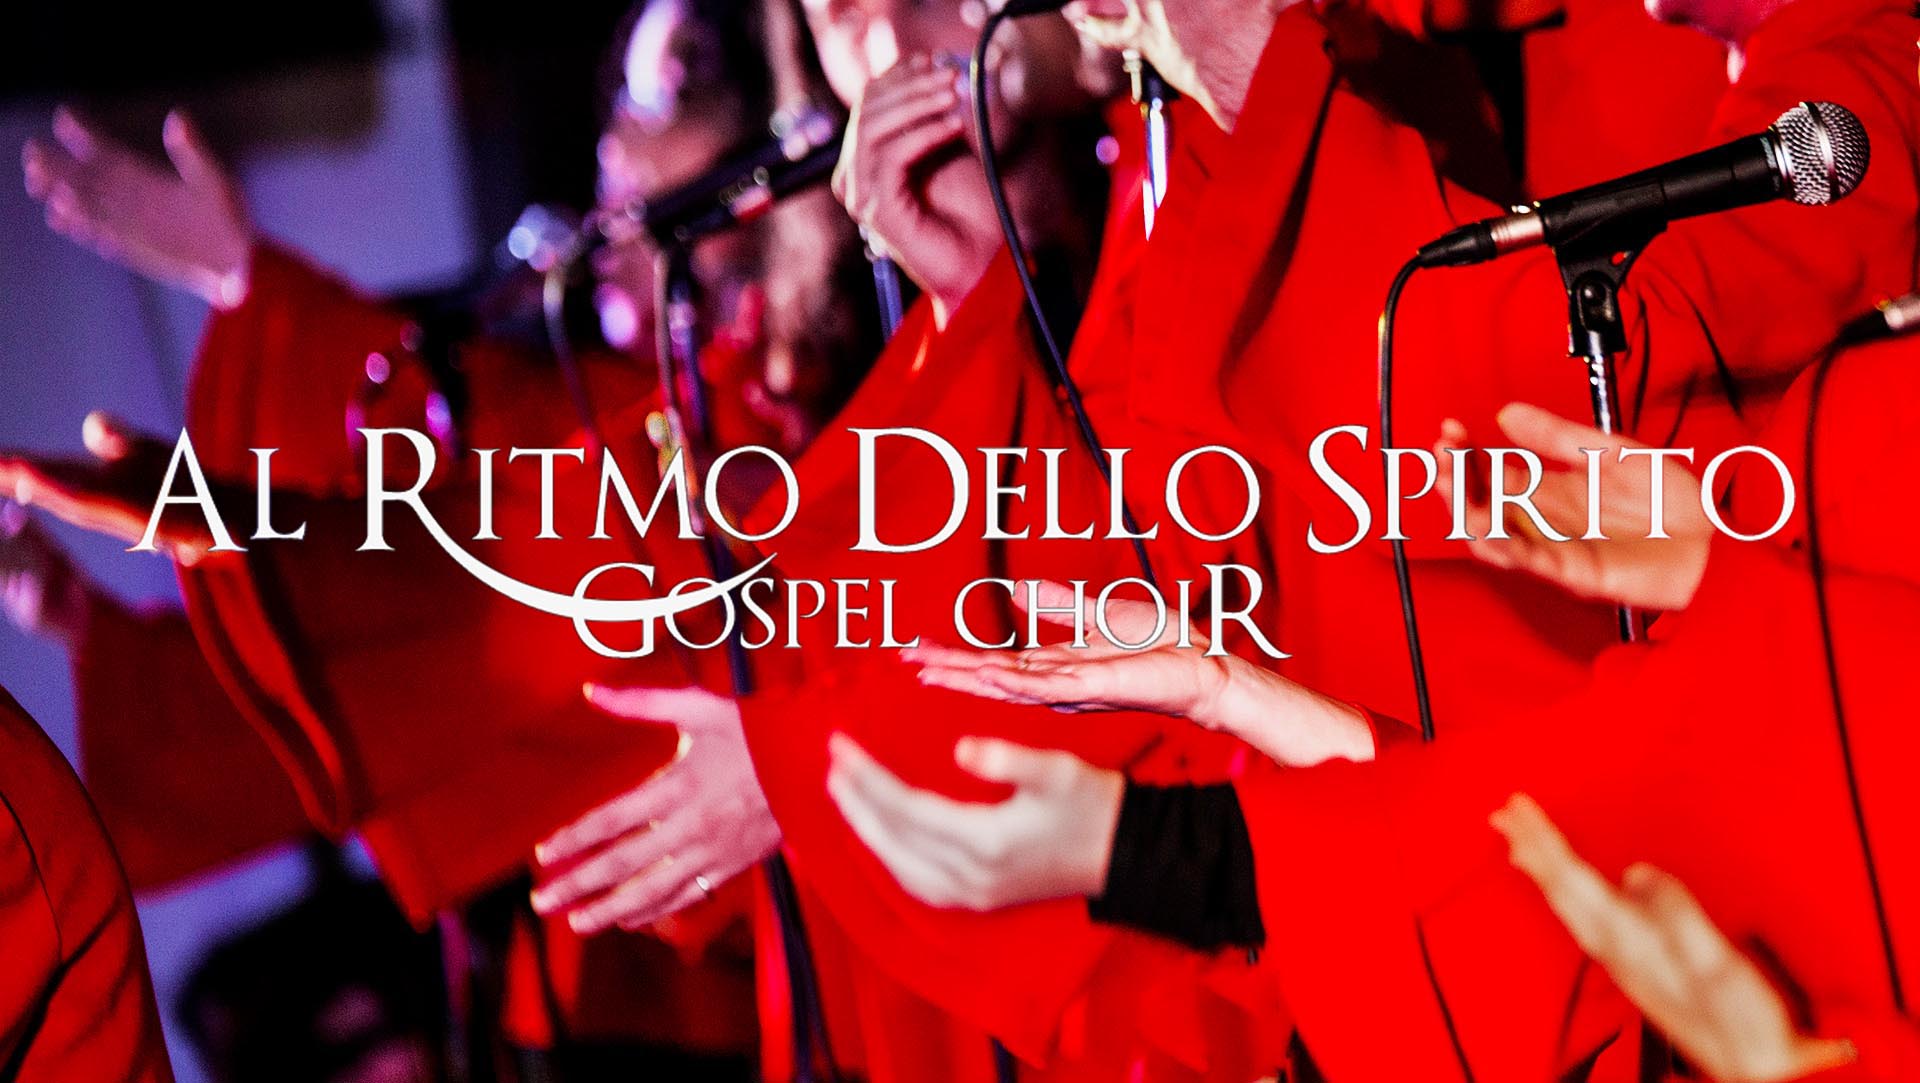 Coro Gospel "Al Ritmo dello Spirito Gospel Choir"